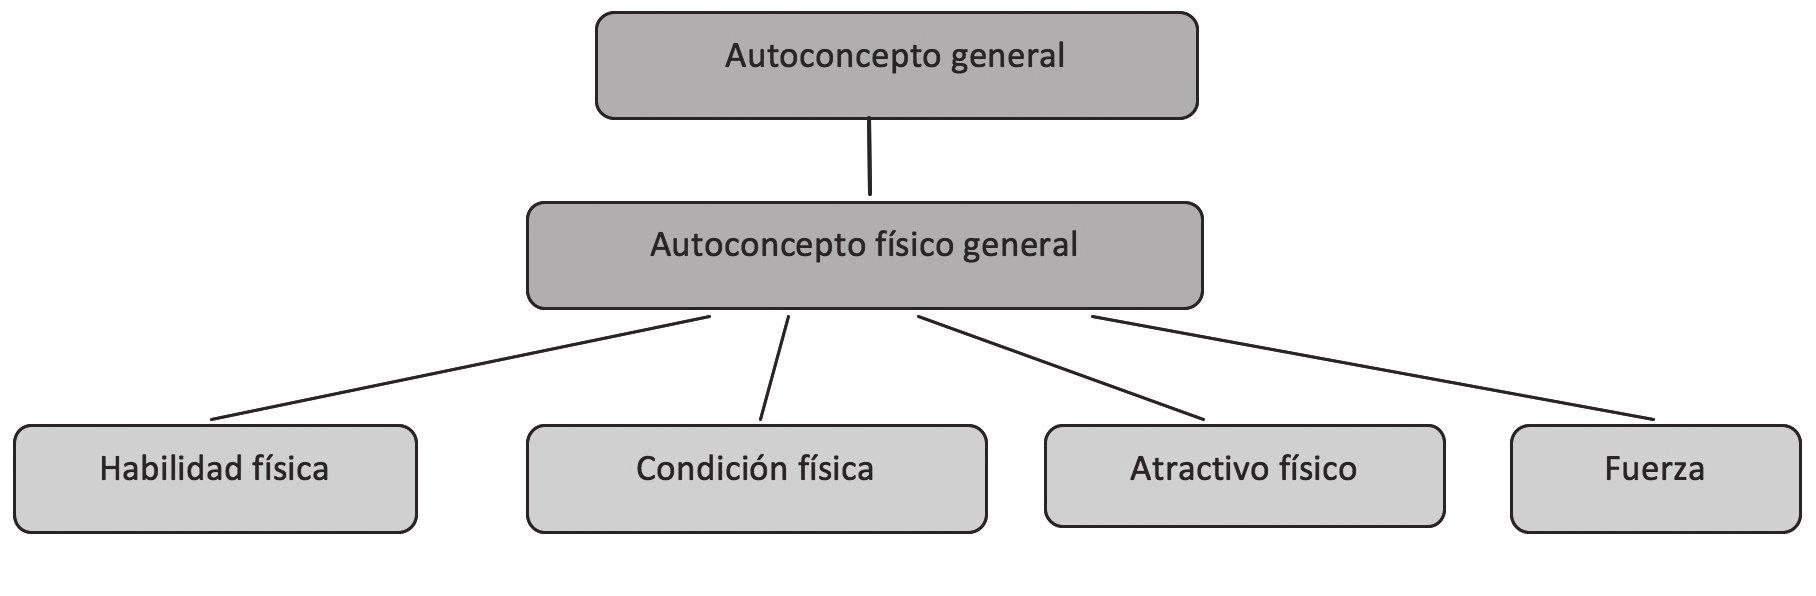 Diferencias en autoconcepto físico en escolares de primaria y secundaria Antonio Fraile Aranda, Javier Catalina Sancho A partir de este modelo de Fox (1988) y de Fox y Corbin (1989), Esnaola (2005) y